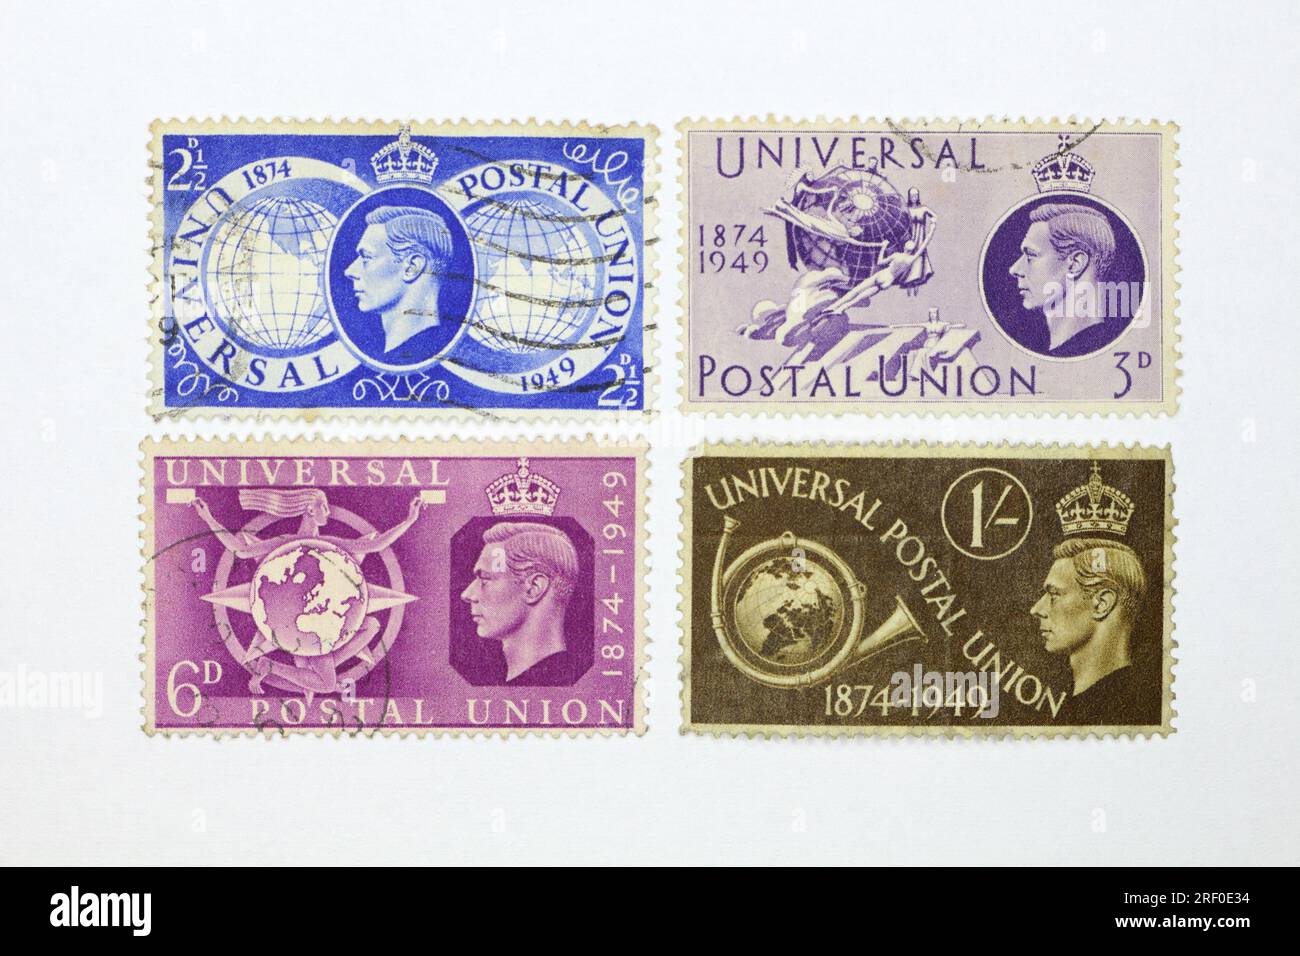 George VI. Stempelt Ausgabe von 1949 zum Gedenken an den 75. Jahrestag der Postunion. Britisches Briefmarkensammler-Hobby Stockfoto